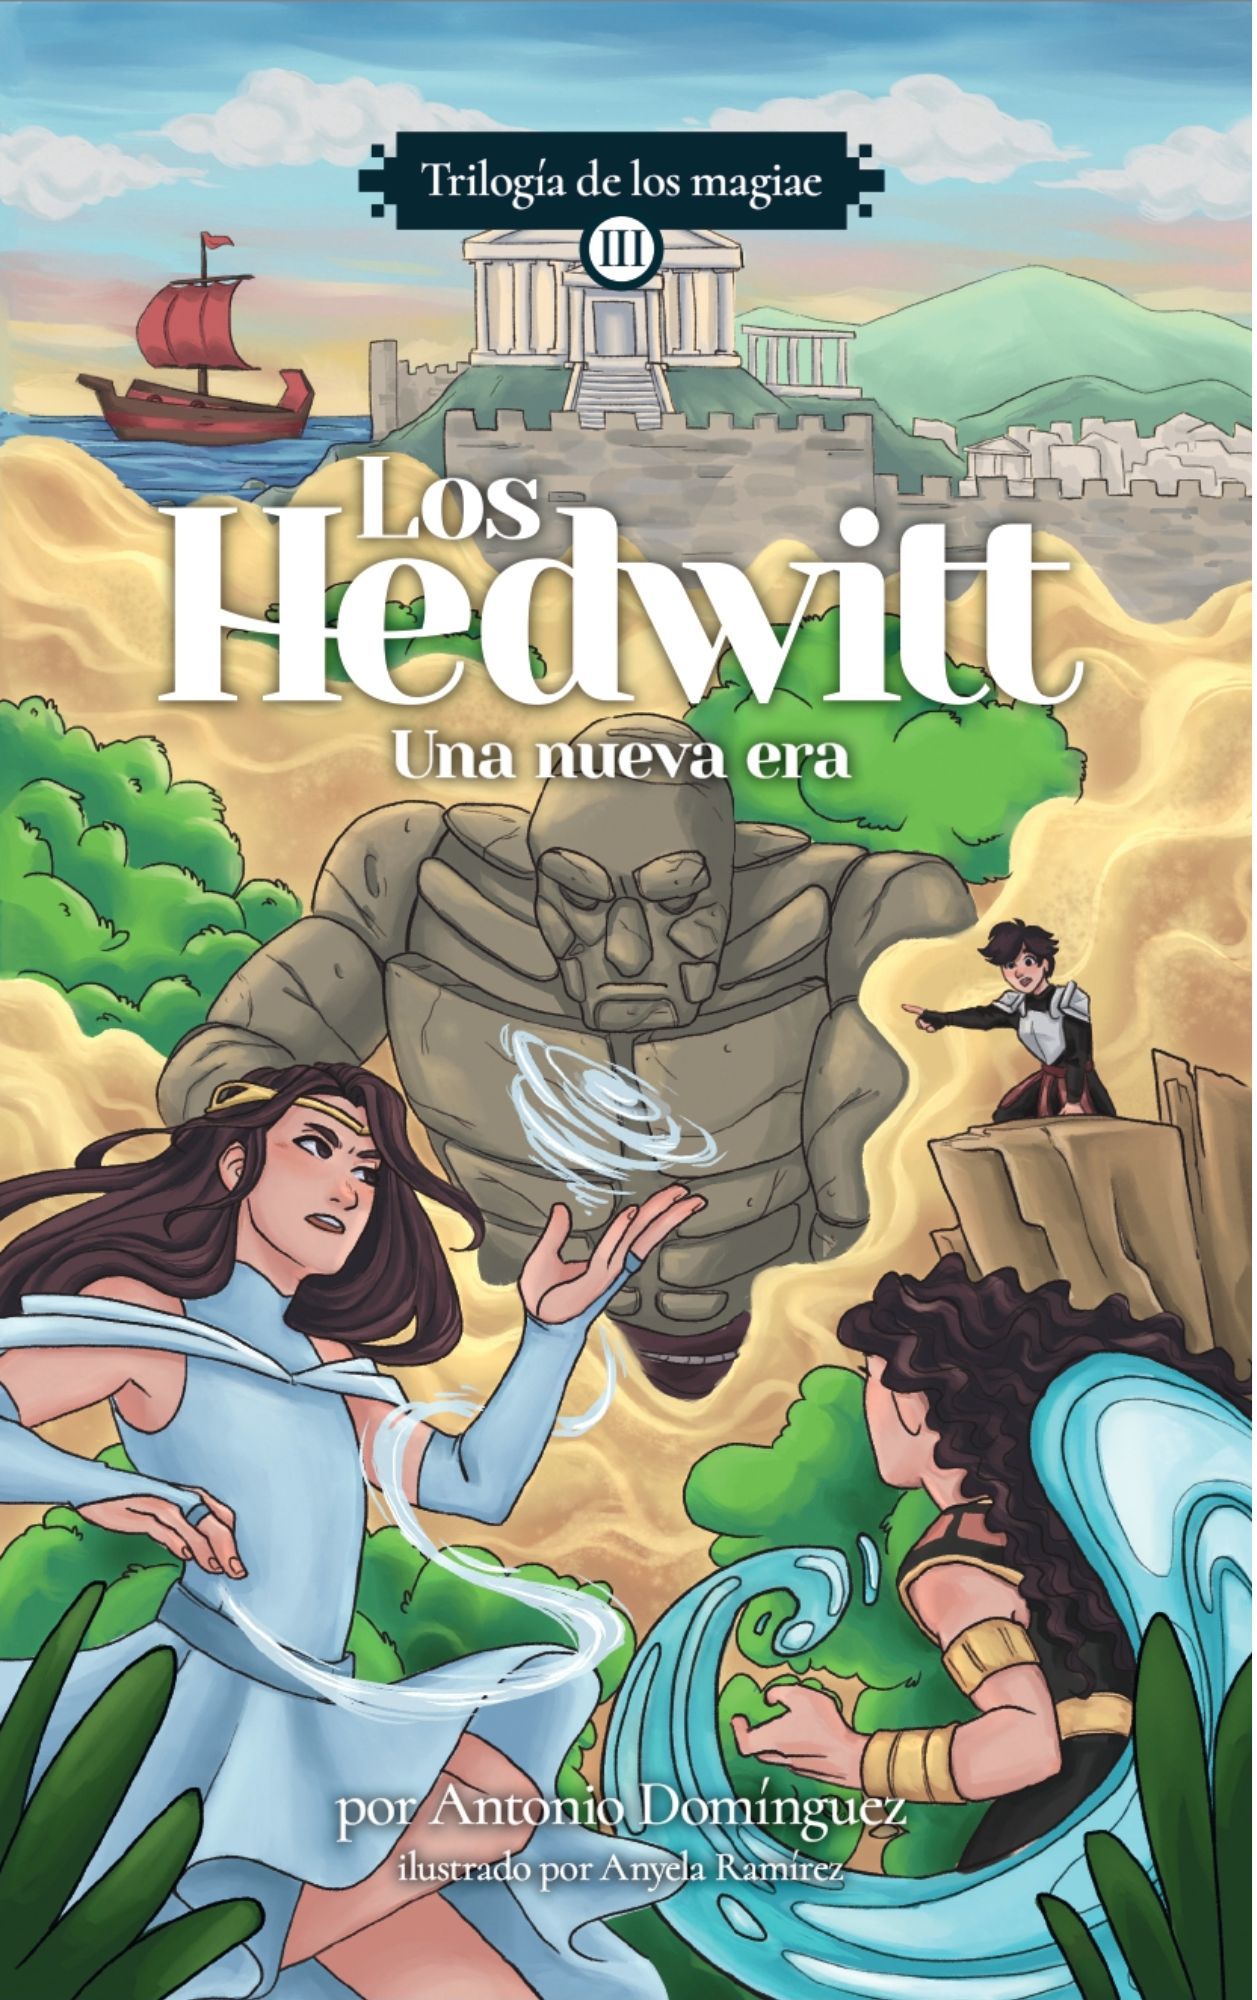 Los Hedwitt - Trilogía de los magiae - Libro III